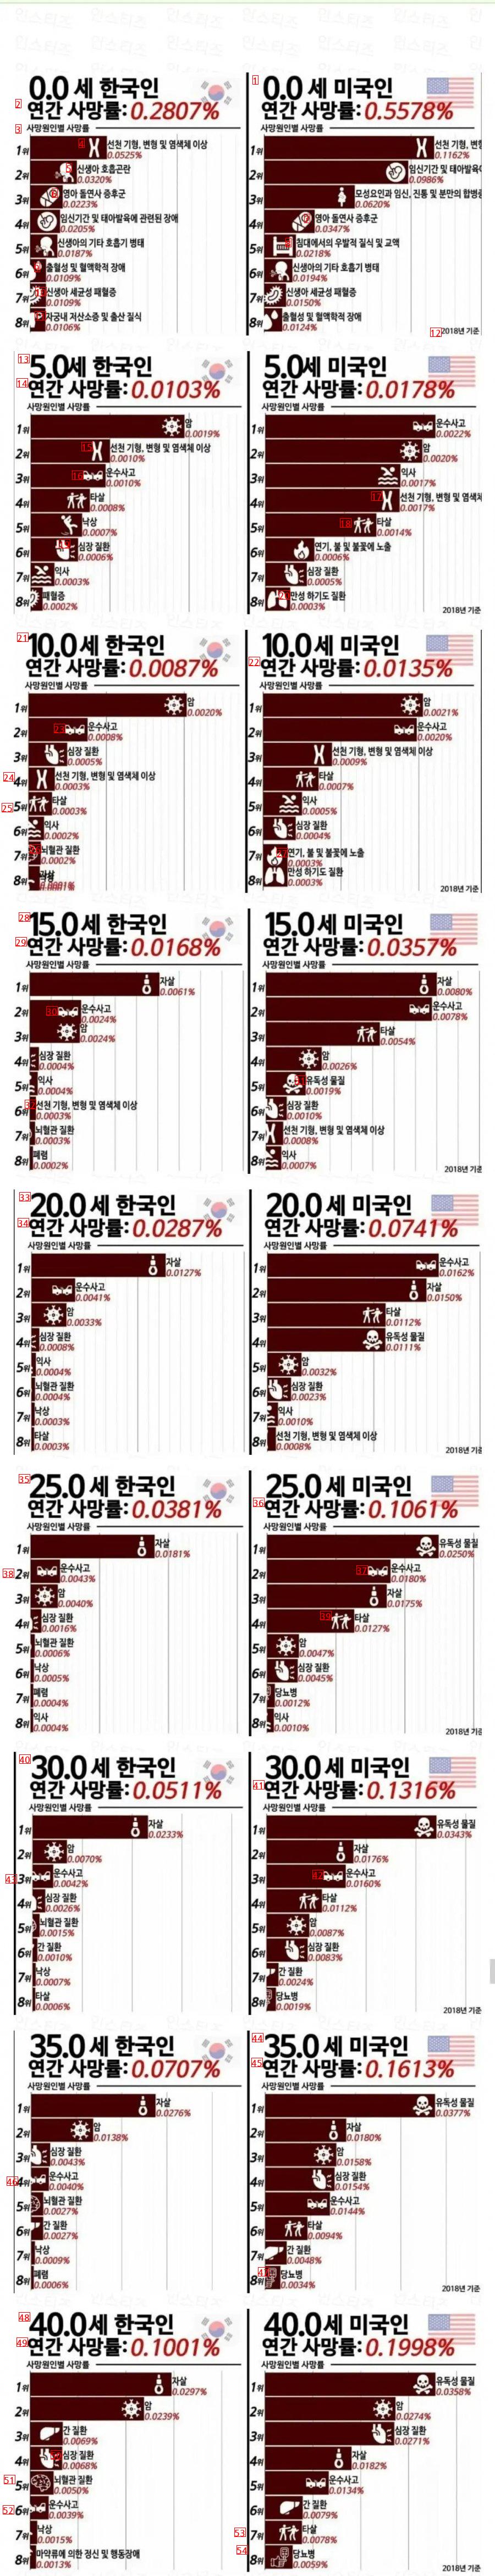 한국과 미국 40세까지 사망원인 비교..jpg